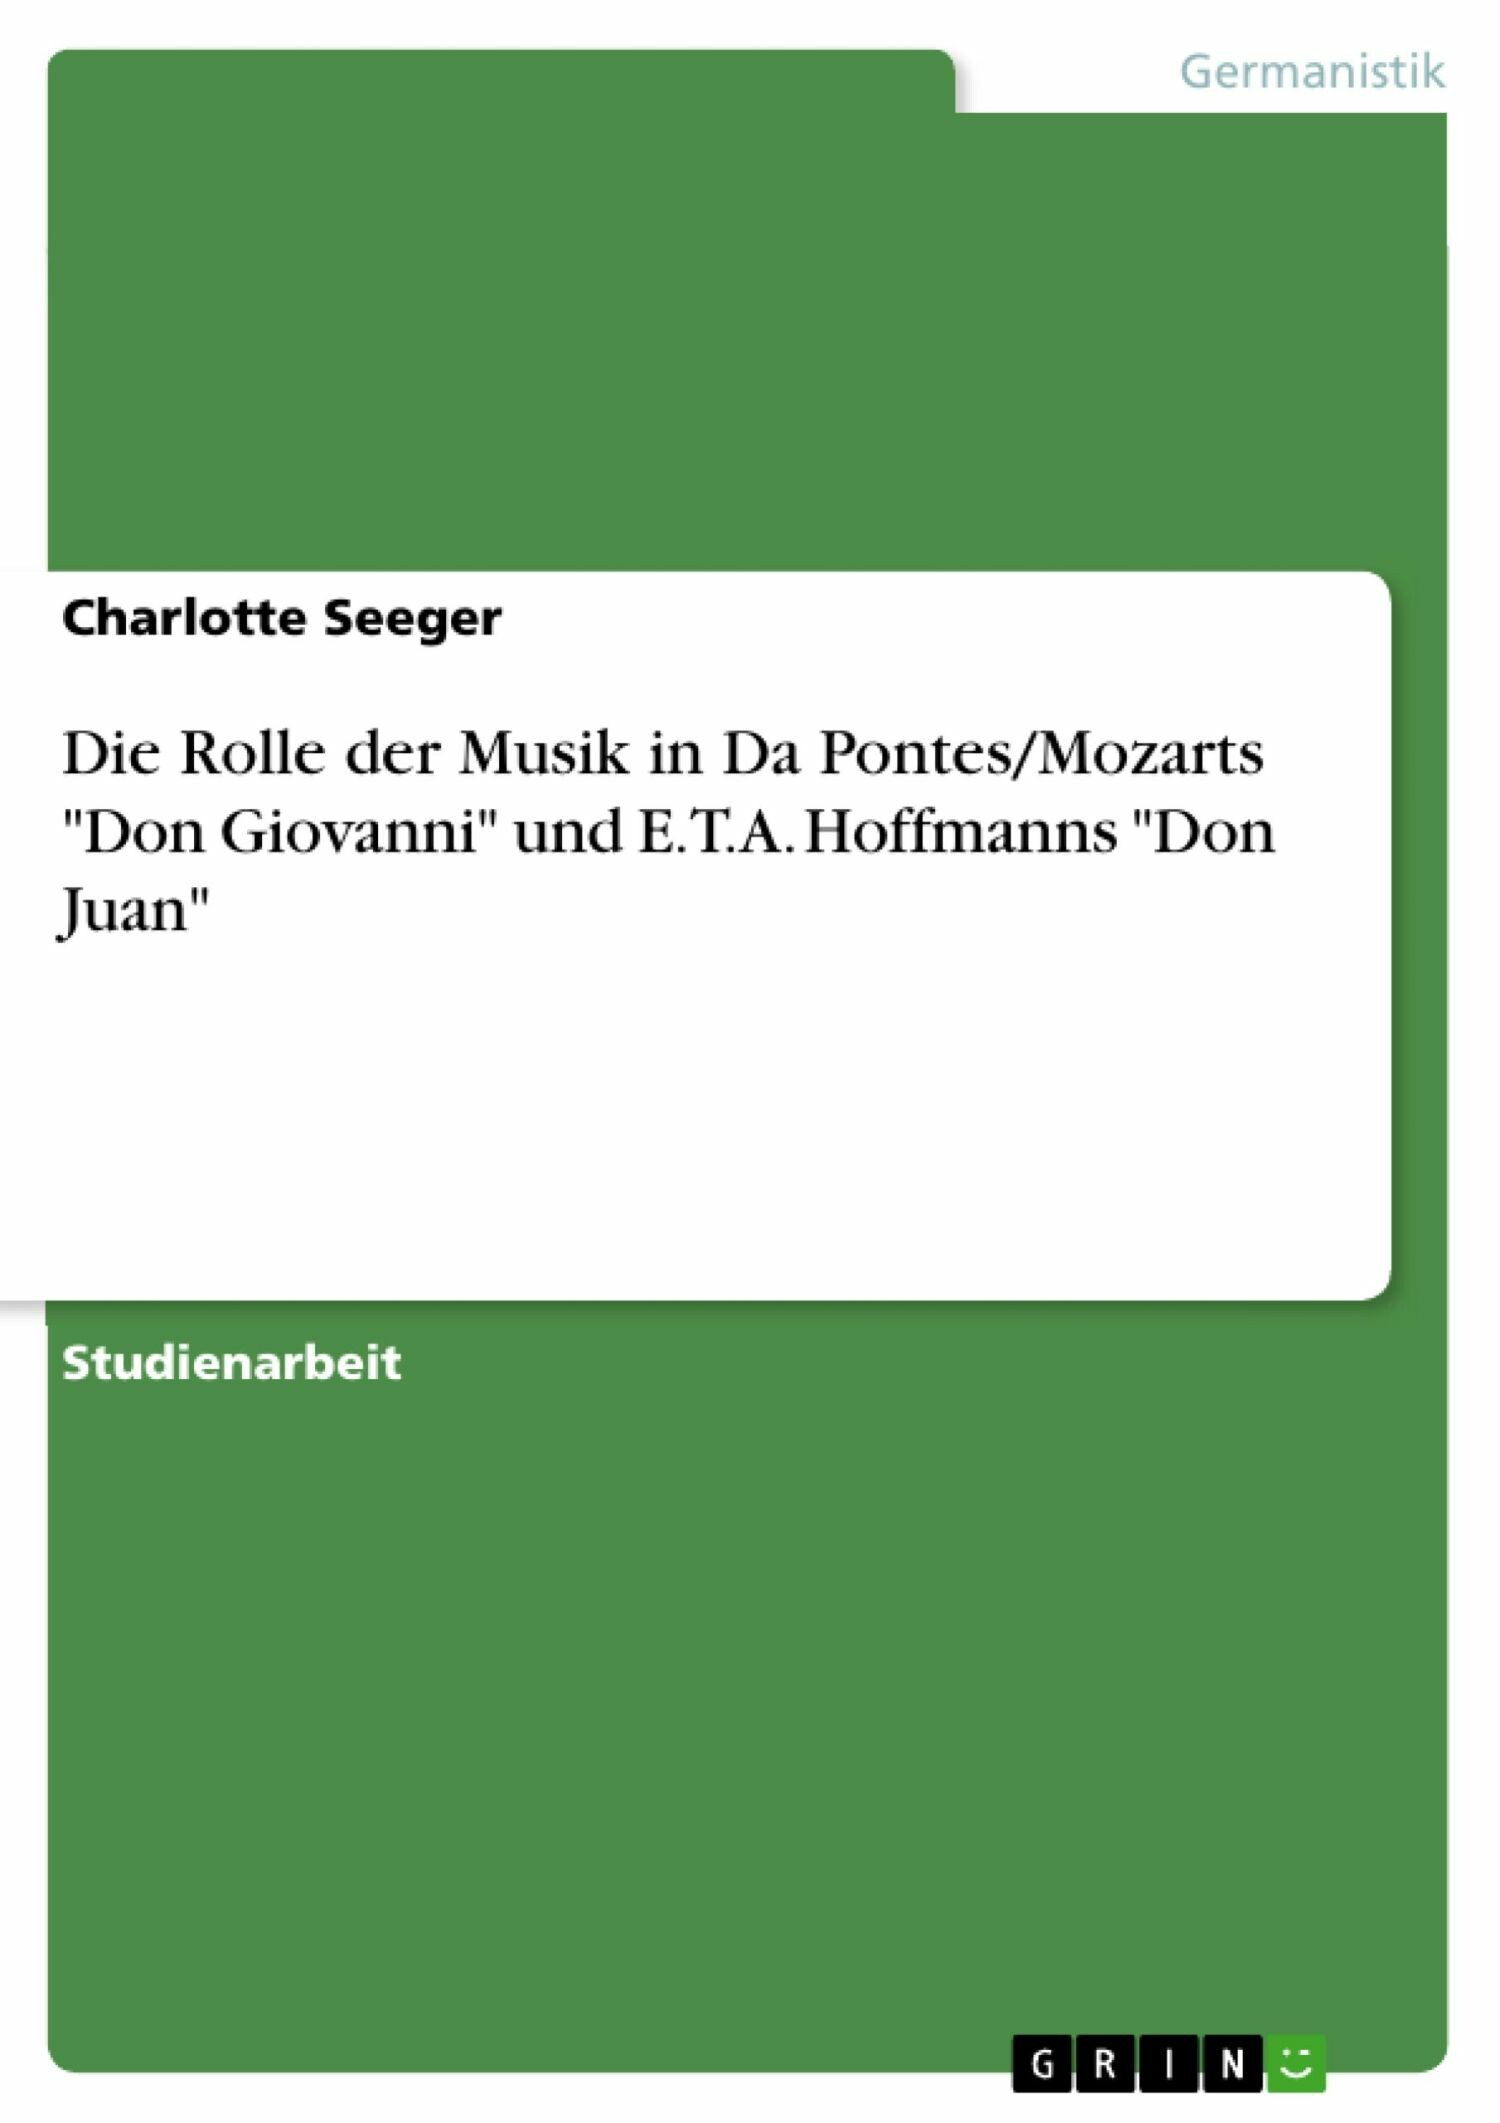 Die Rolle der Musik in Da Pontes/Mozarts 'Don Giovanni' und E.T.A. Hoffmanns 'Don Juan'